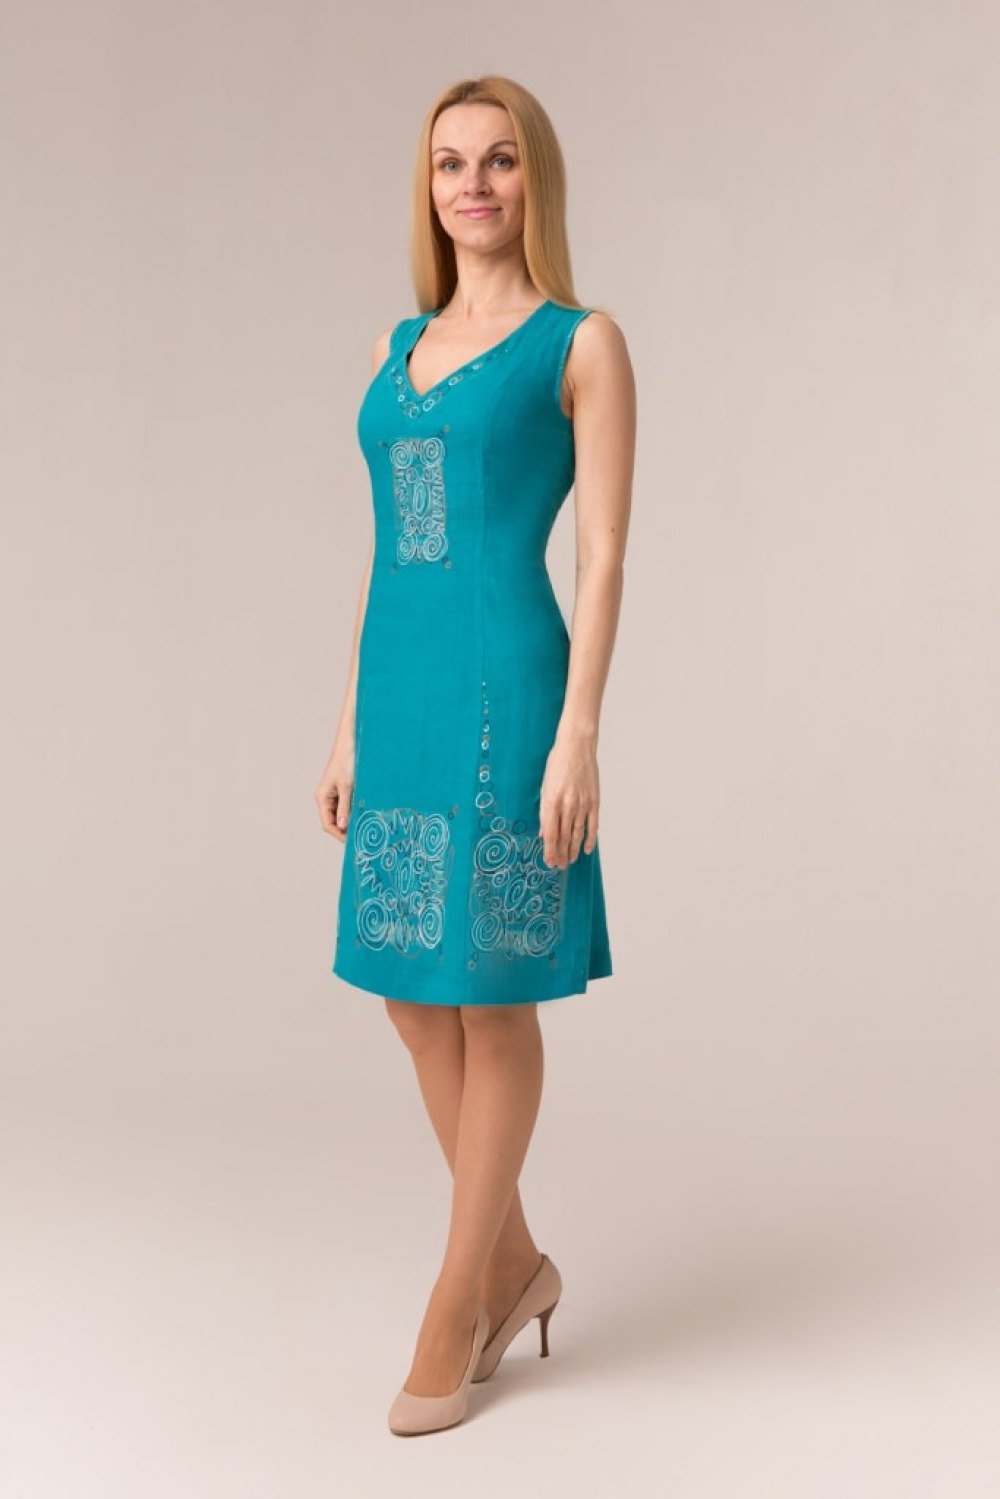 Сарафан женский "Маленькое платье" модель 401/2 бирюза